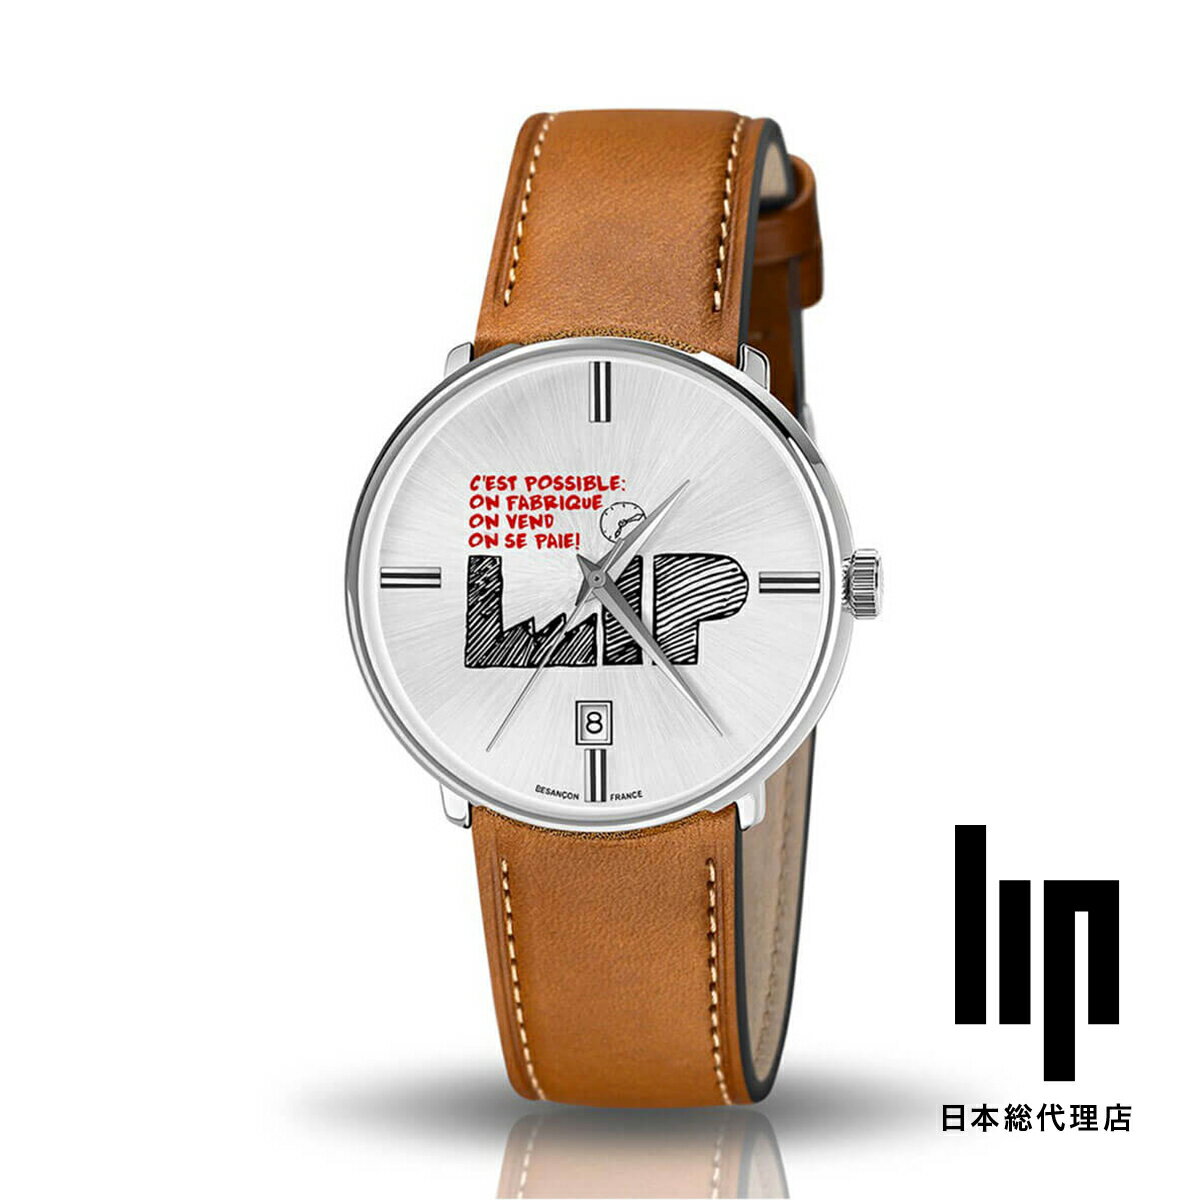 リップ リップ LIP 日本公式ストア セ・ポッシブル シルバー ブラウンレザー 腕時計 レディース ブランド